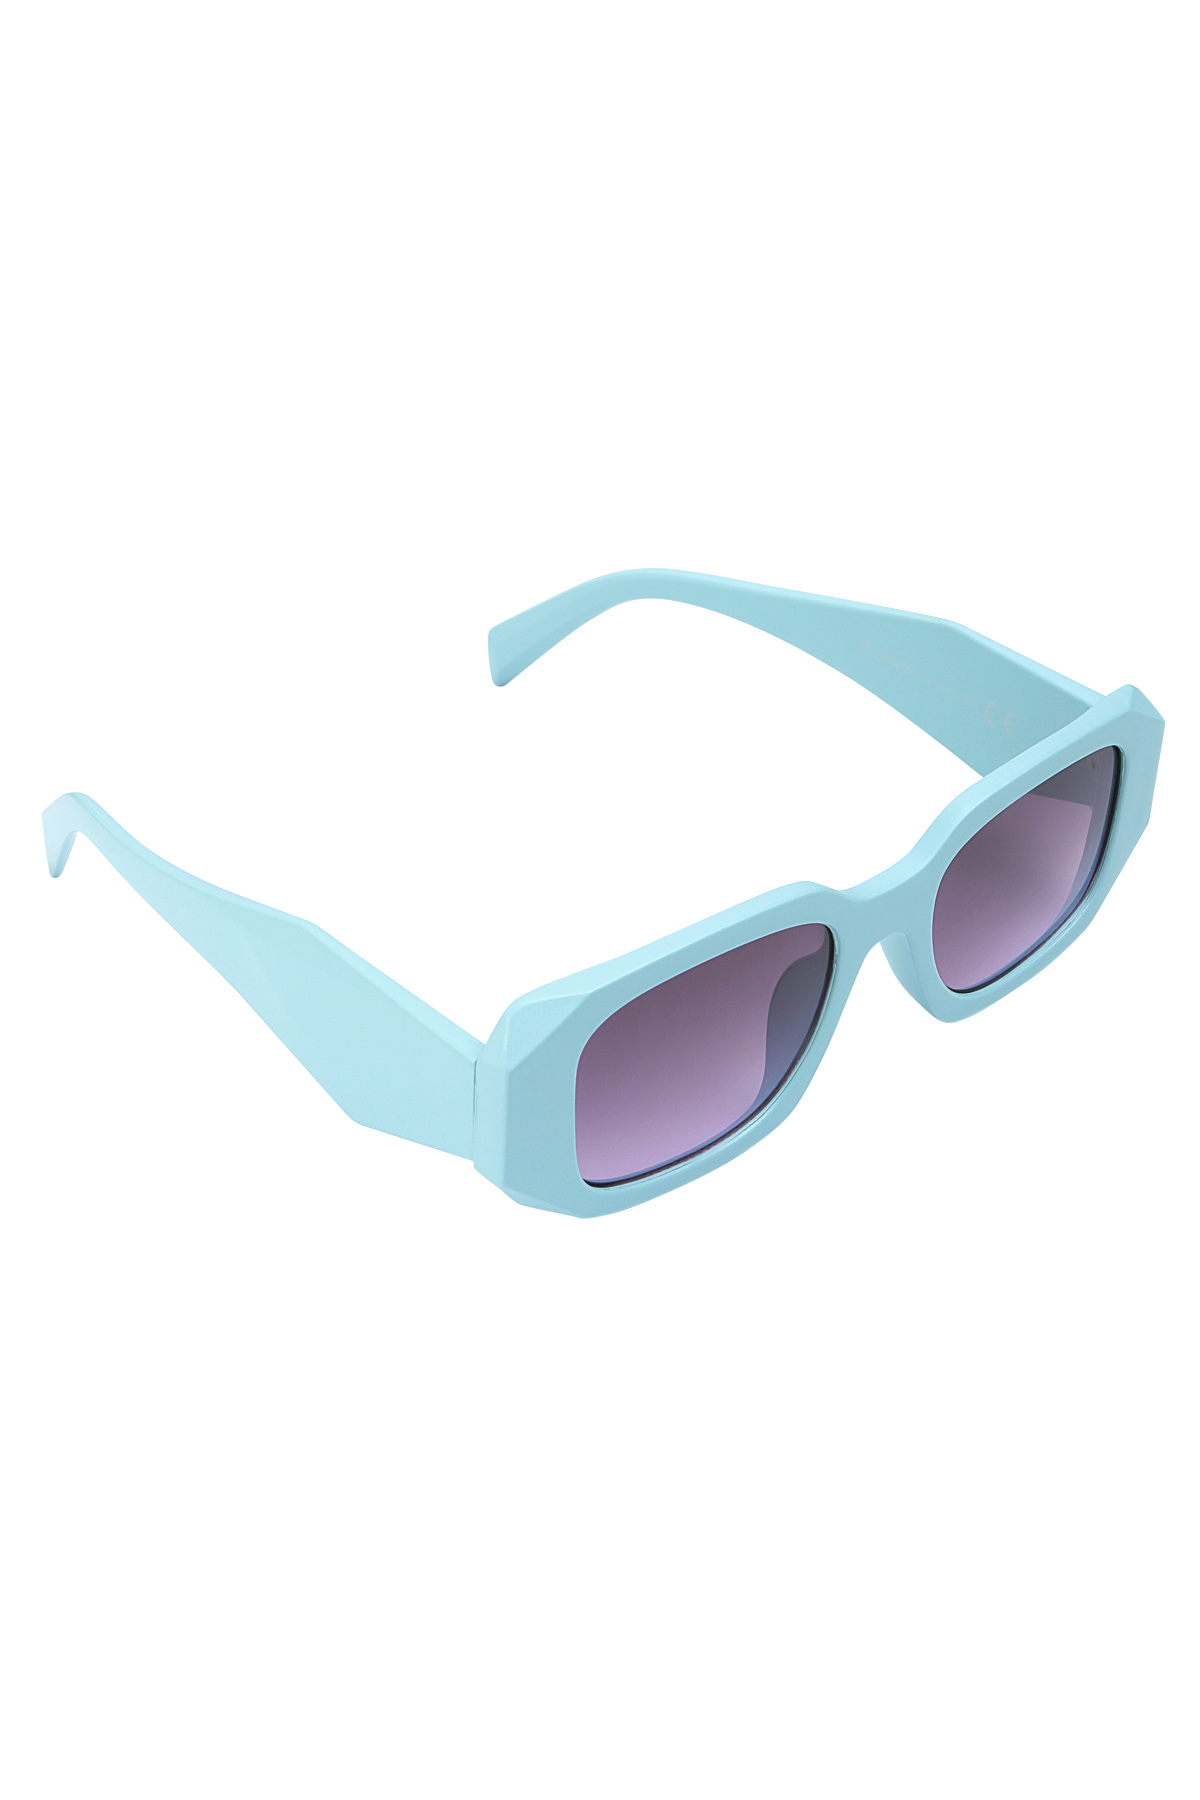 Look a like sunglasses with corners - blue